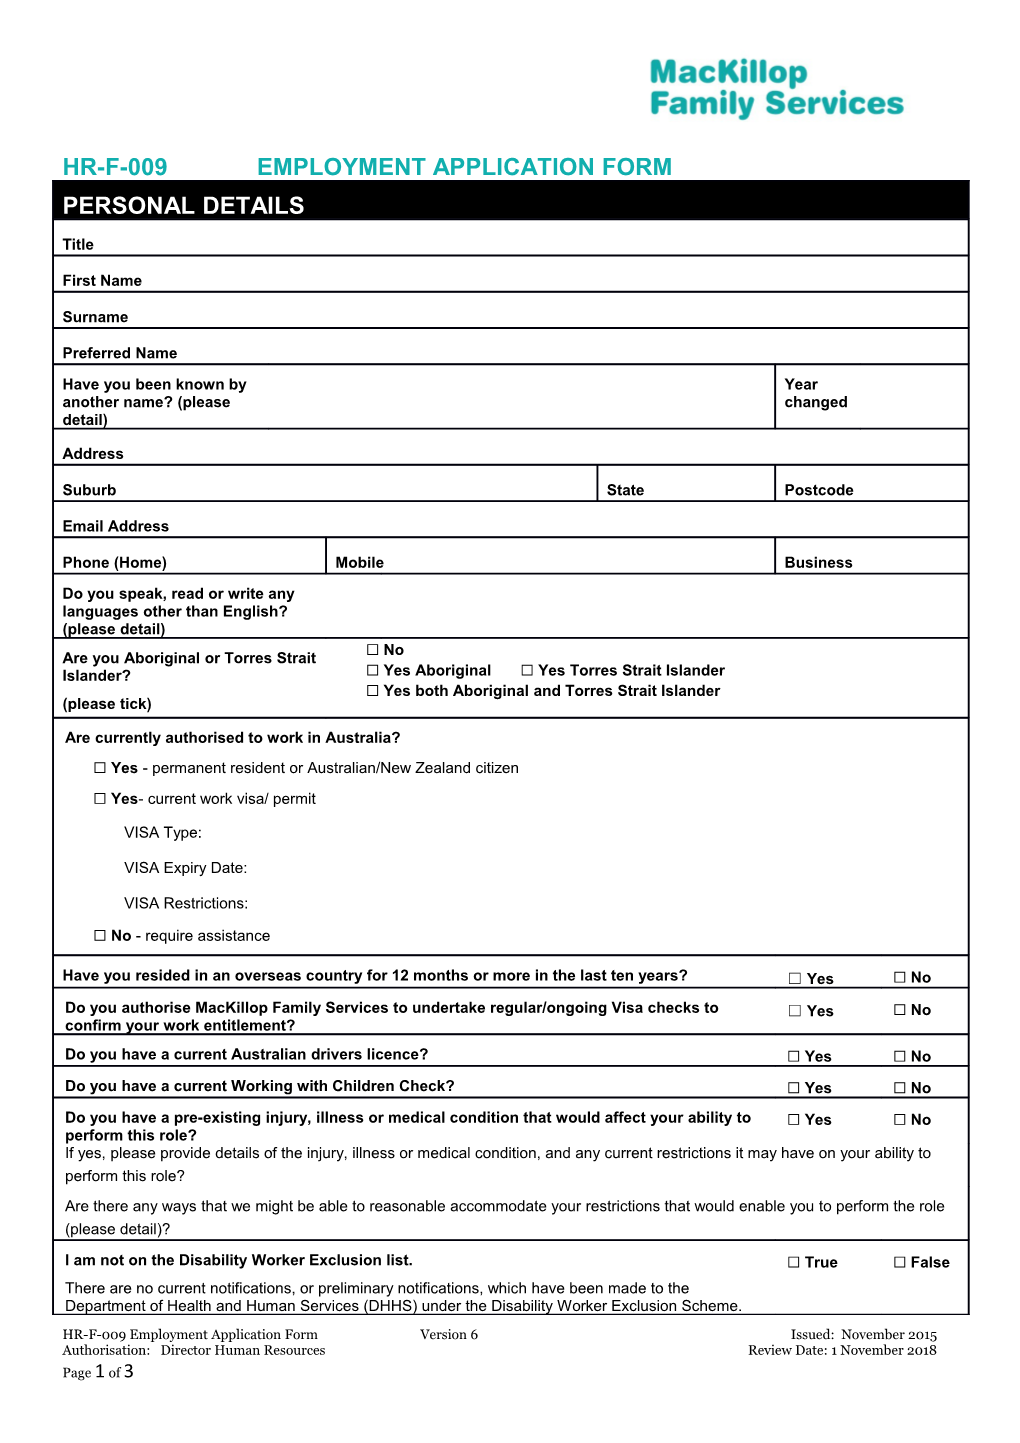 HR-F-009 Application Form